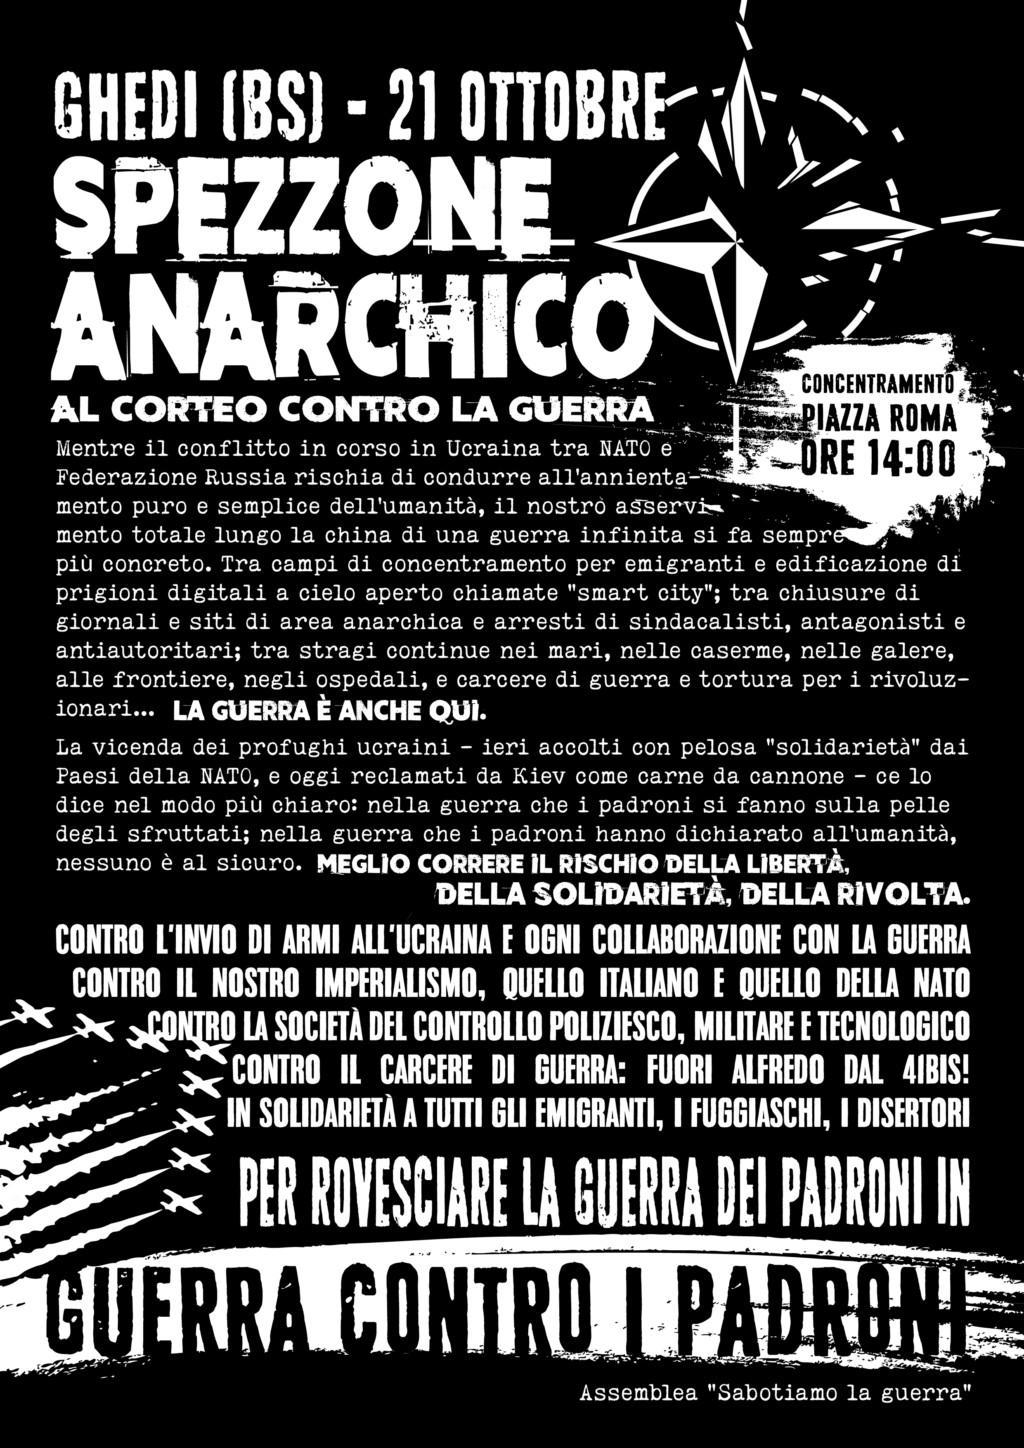 Salgamos a la calle contra la guerra, la sociedad del control, la represión. Bloque anarquista en la manifestación de Ghedi (Brescia) el 21 de octubre + iniciativas los días 19 y 20 del mismo mes